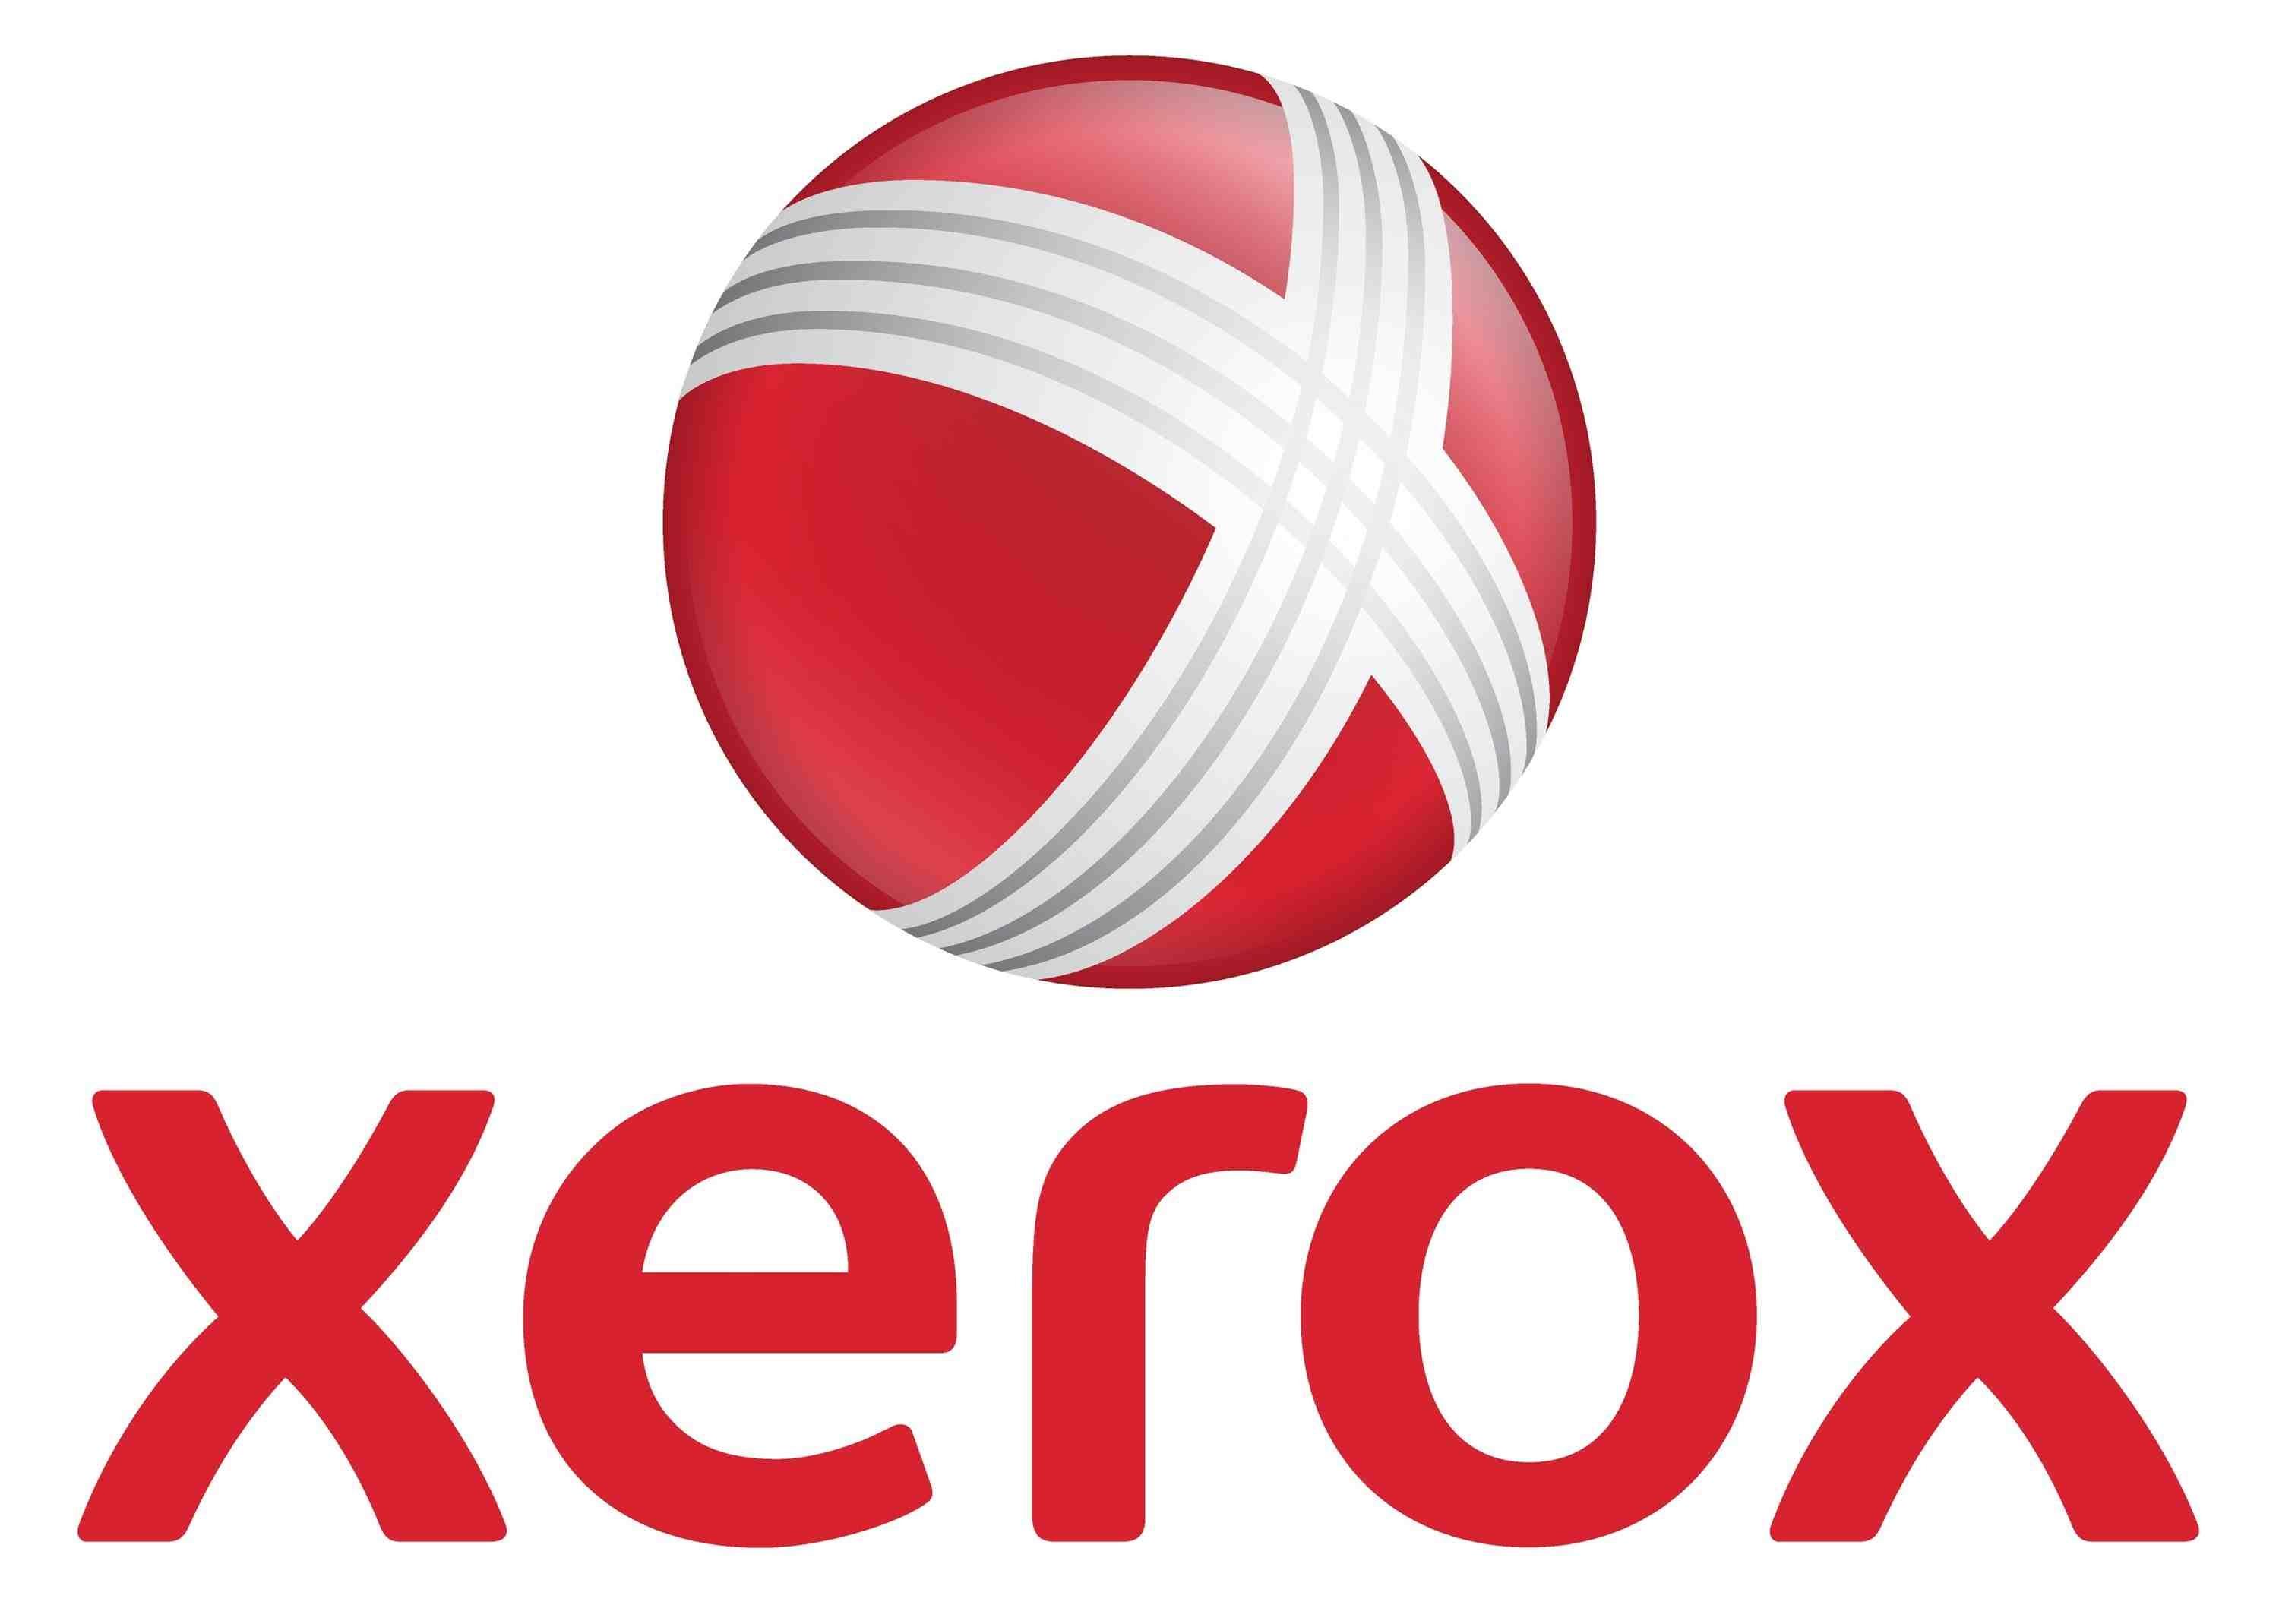 Вал подачи Xerox оригинальный для Xerox DC265 (006K20110) - фото 1